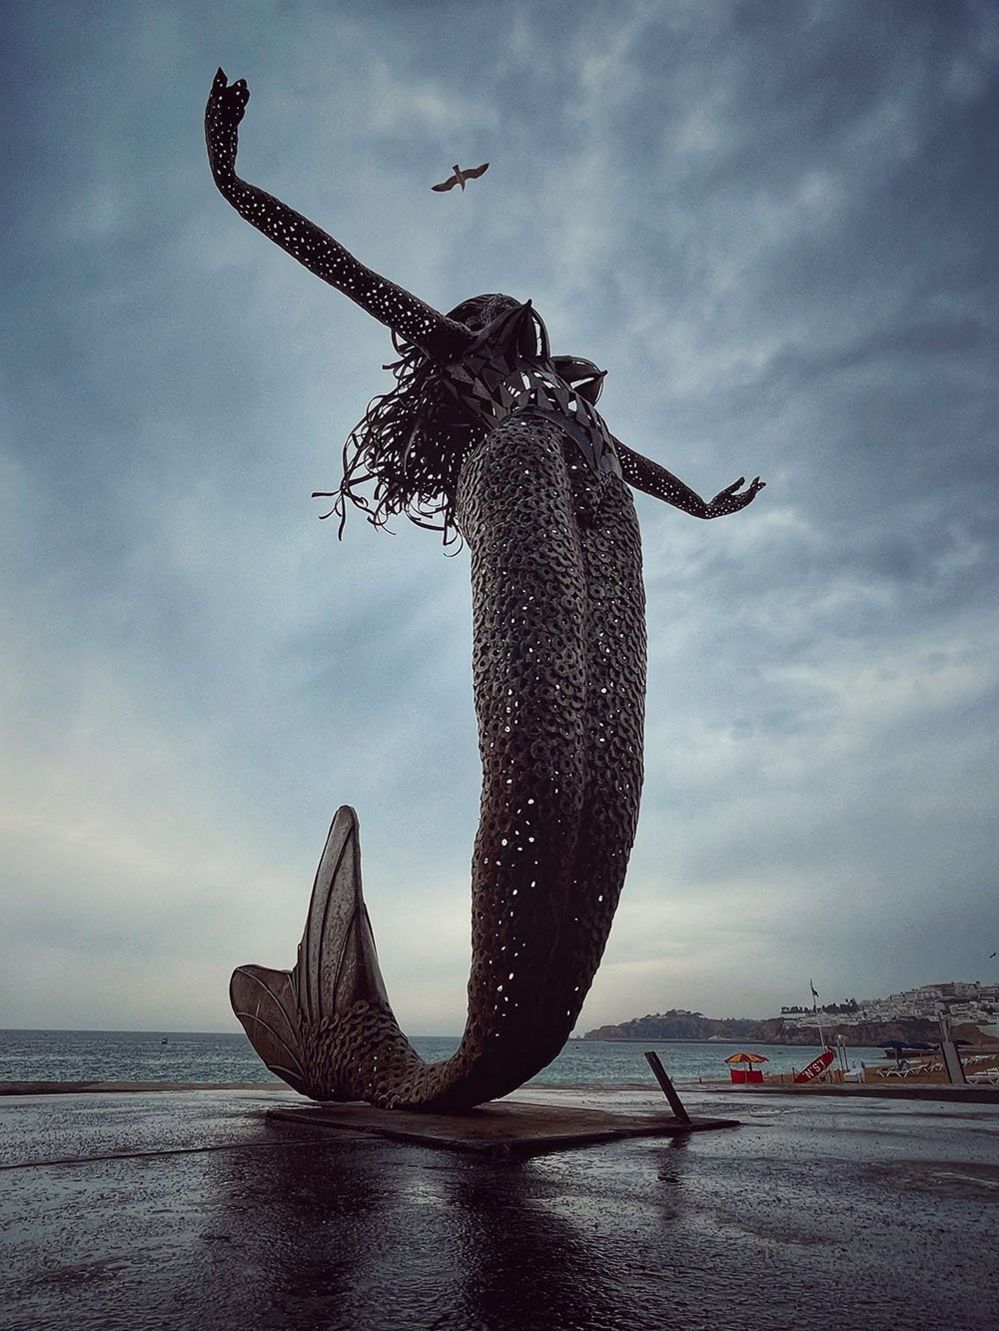 Mermaid sculpture